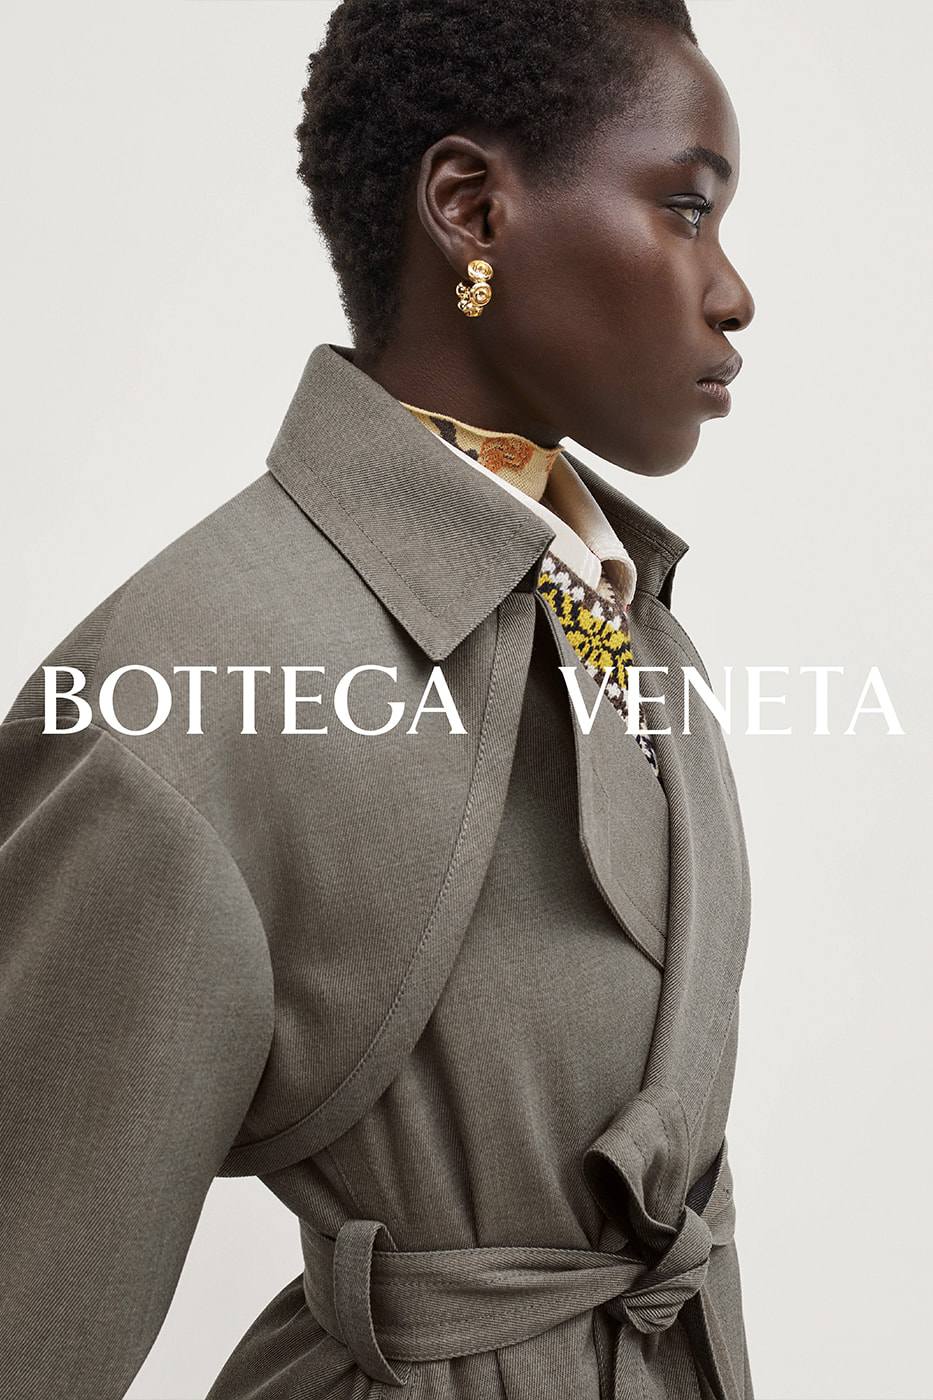 Bộ sưu tập đẹp như giấc mơ của Bottega Veneta - 2